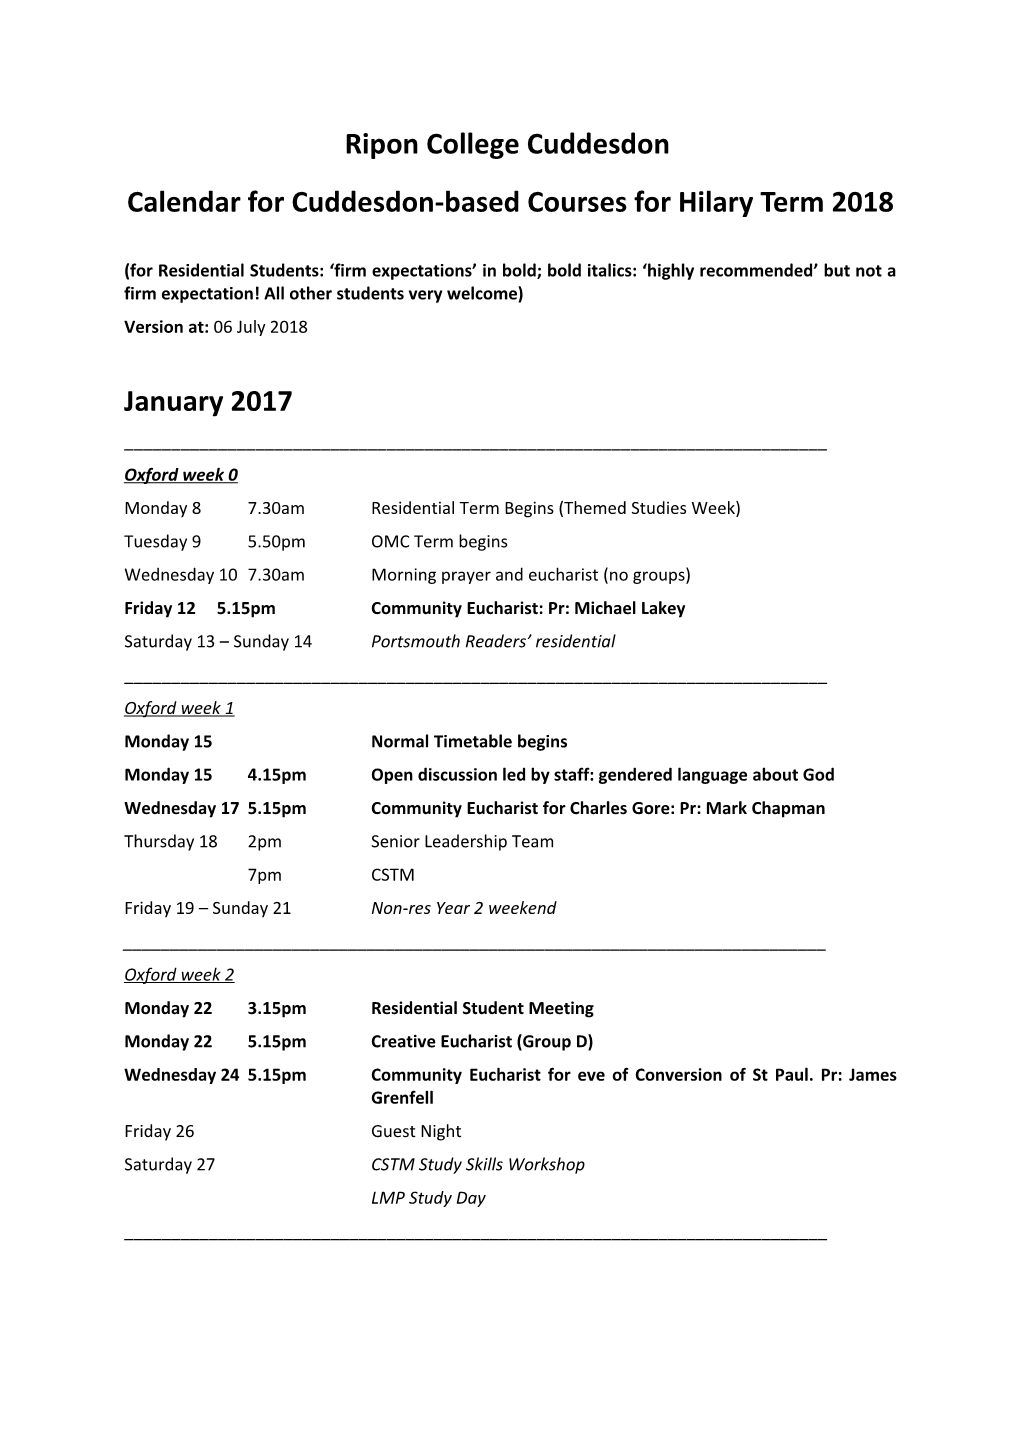 Calendar for Cuddesdon-Based Courses for Hilary Term 2018